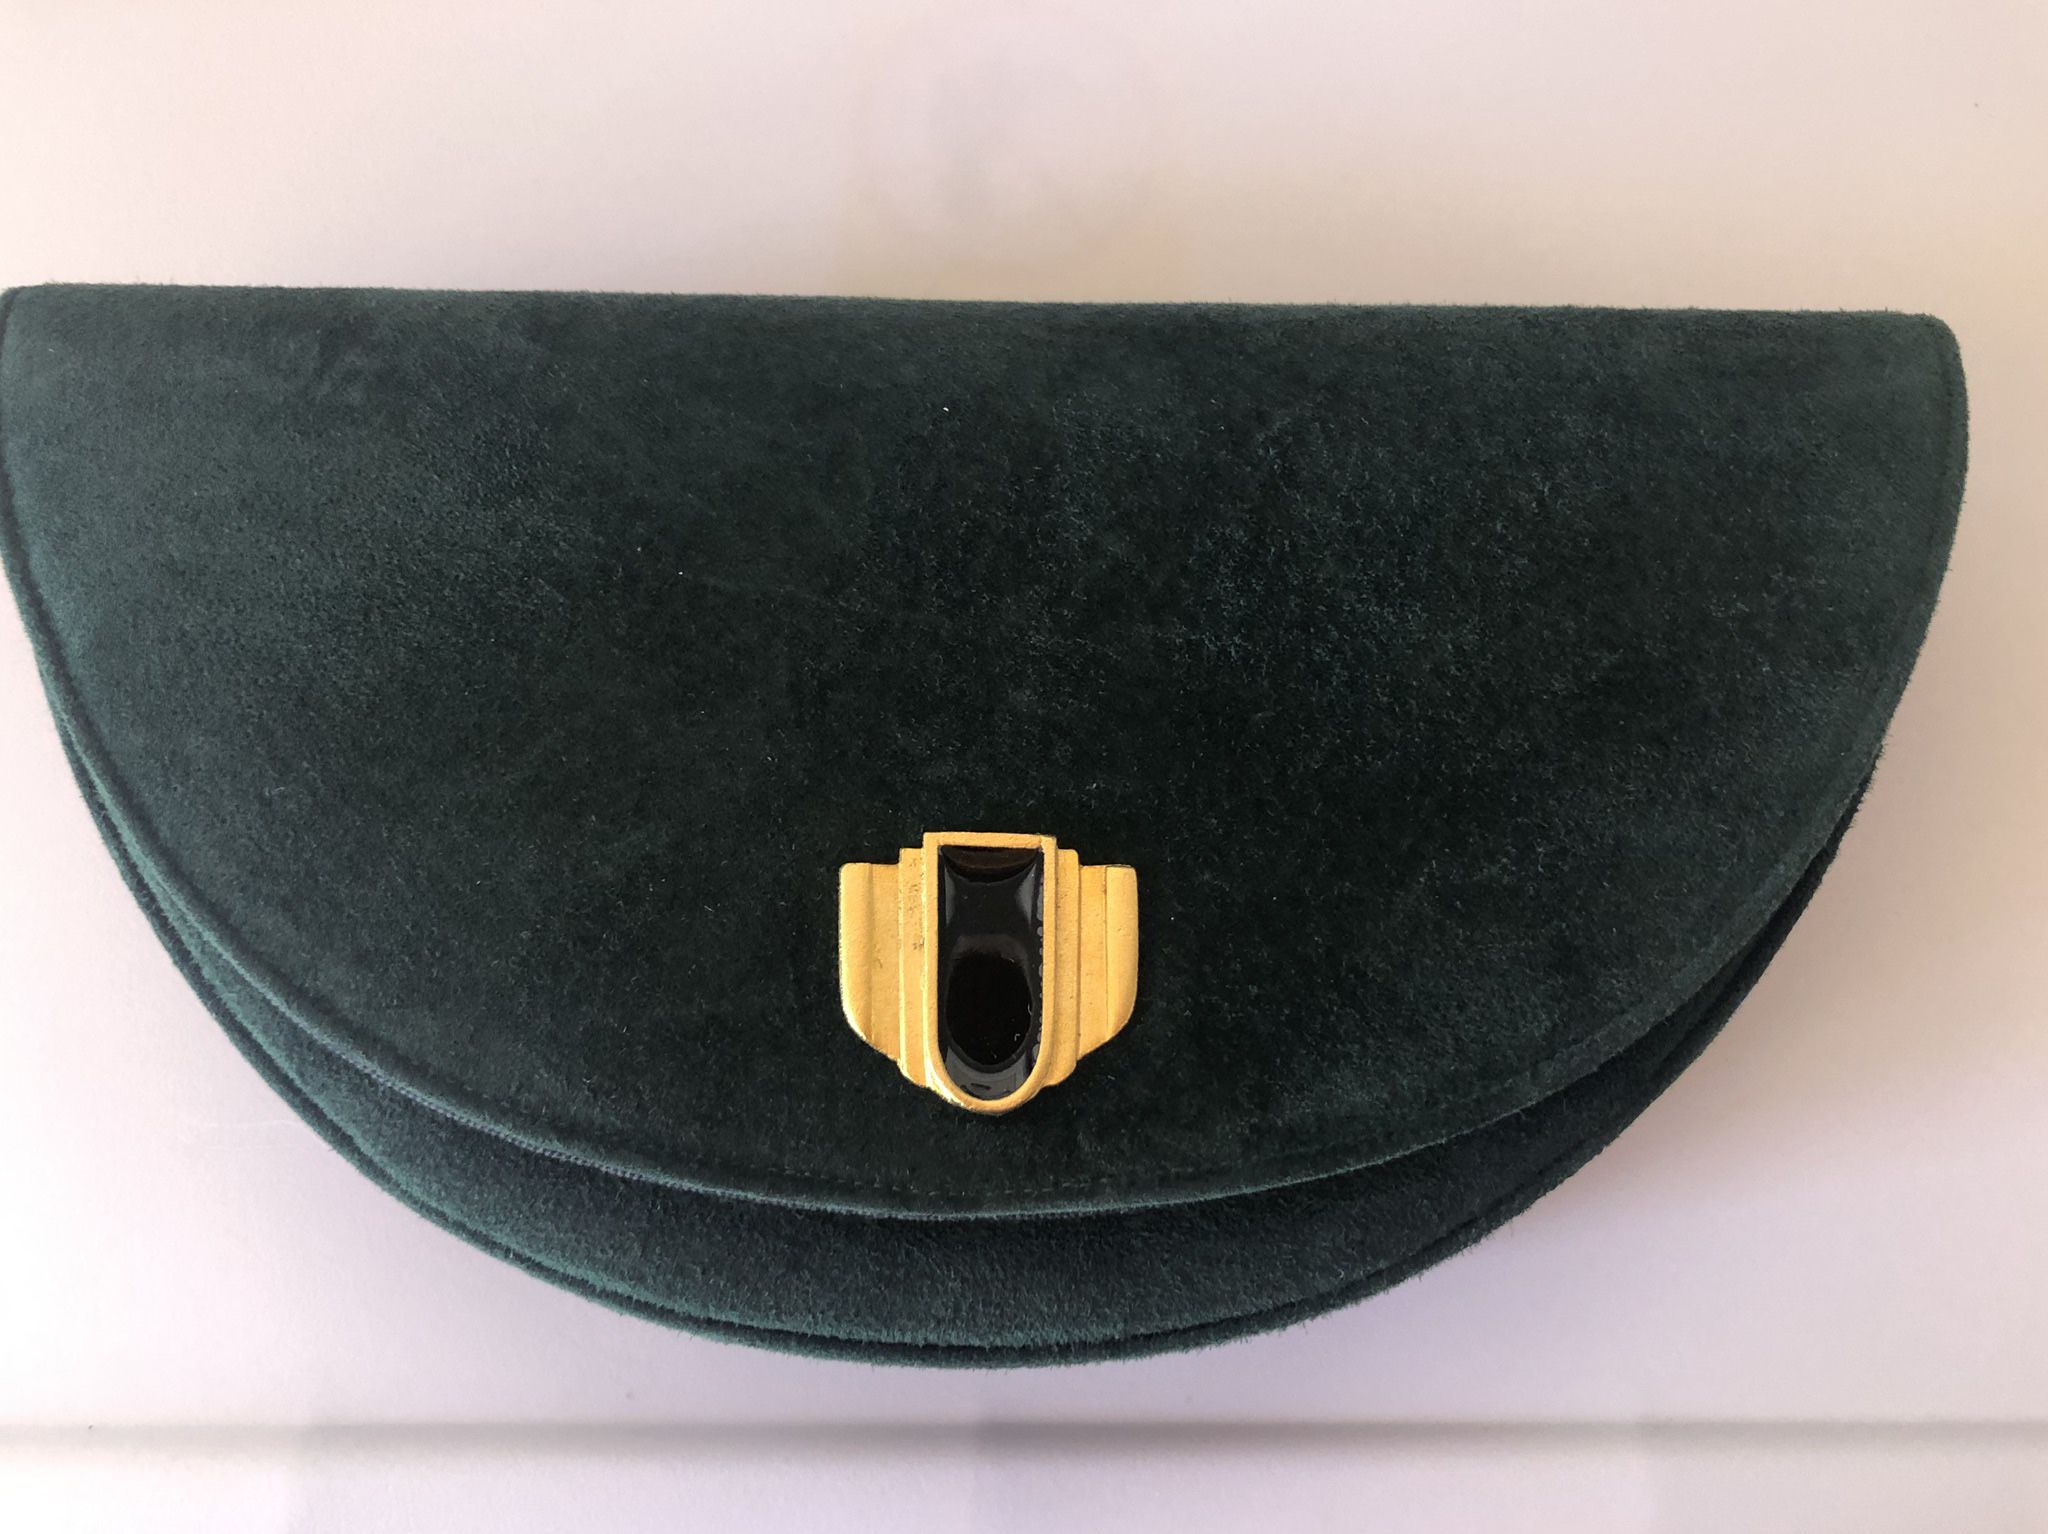 Varon Handbags Vintage NWT Green Suede Clutch/shoulder Bag 